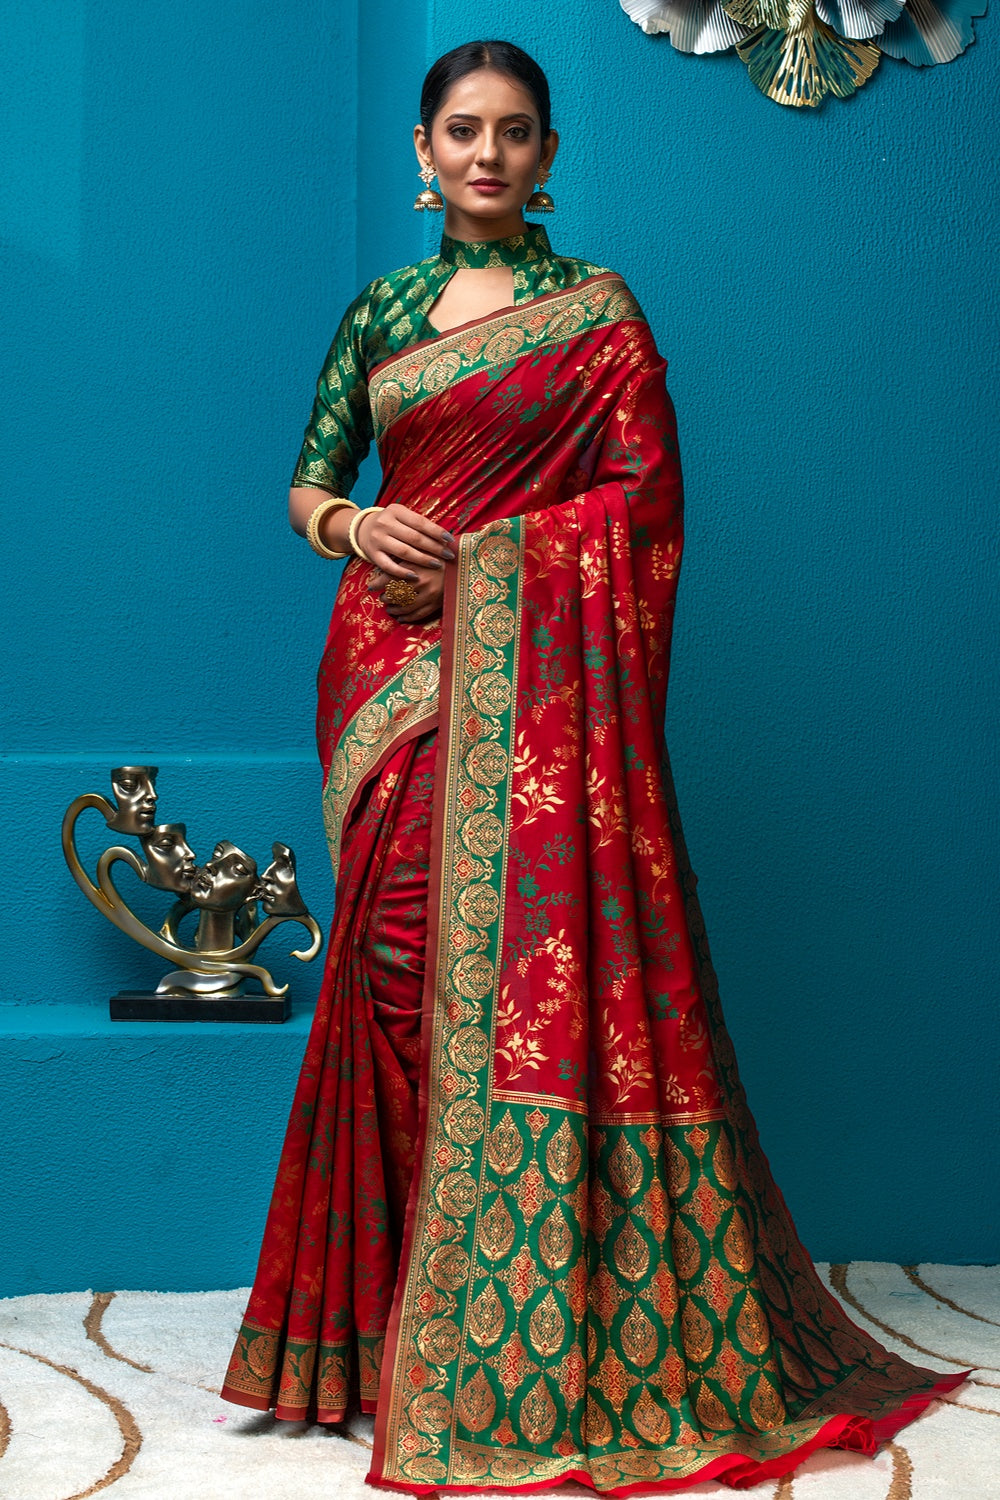 Red Soft Banarasi Silk SareeBuy Now Zaree Weave Saree At Best